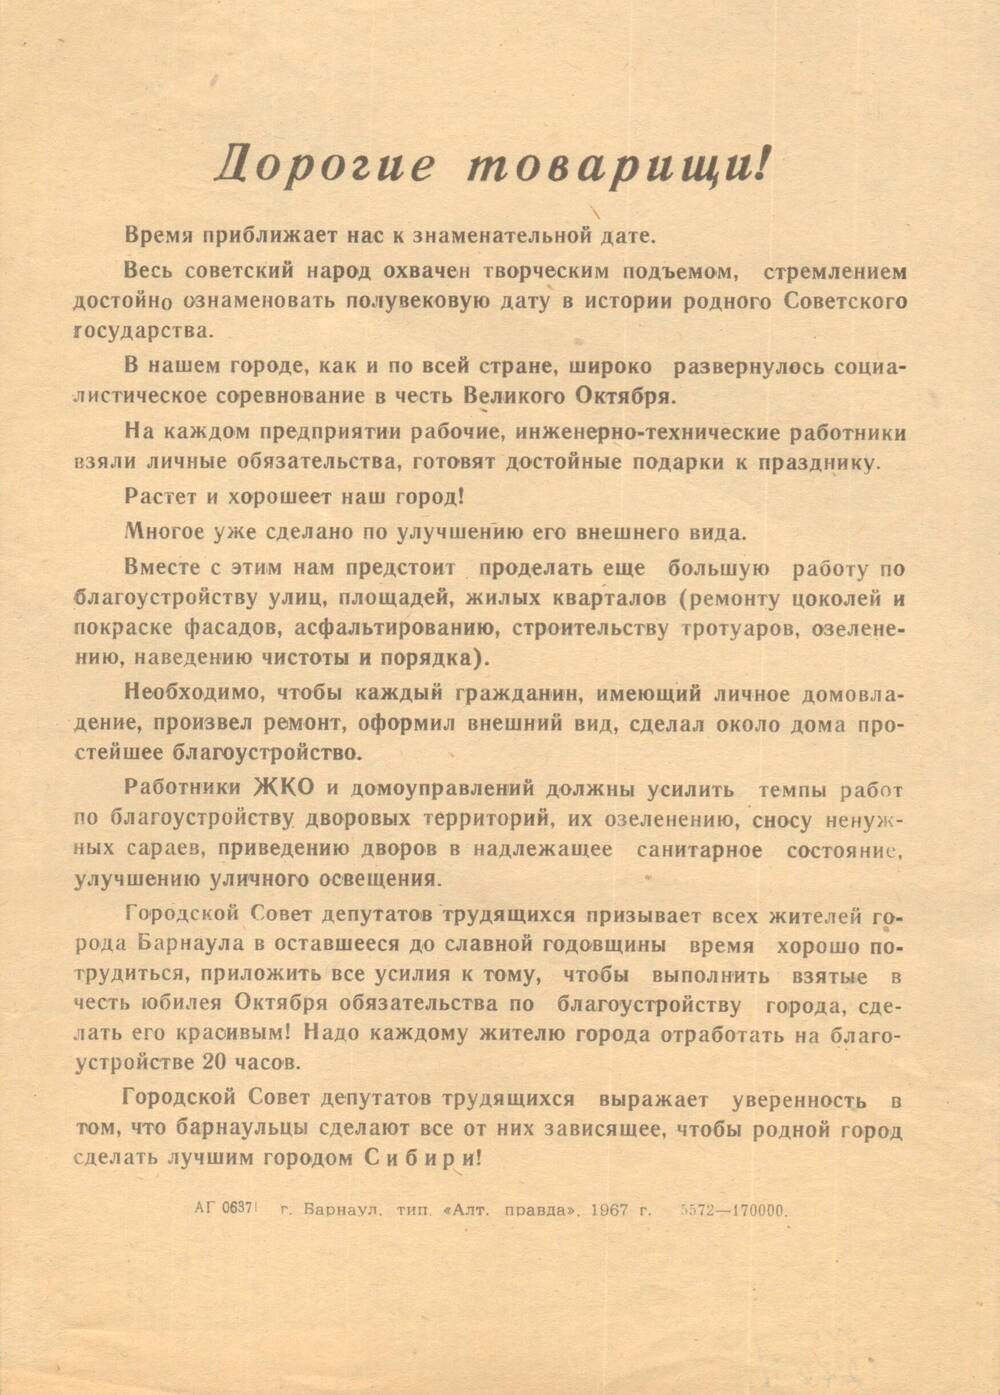 Листовка Барнаульского горсовета с обращением к барнаульцам в честь юбилея Октября